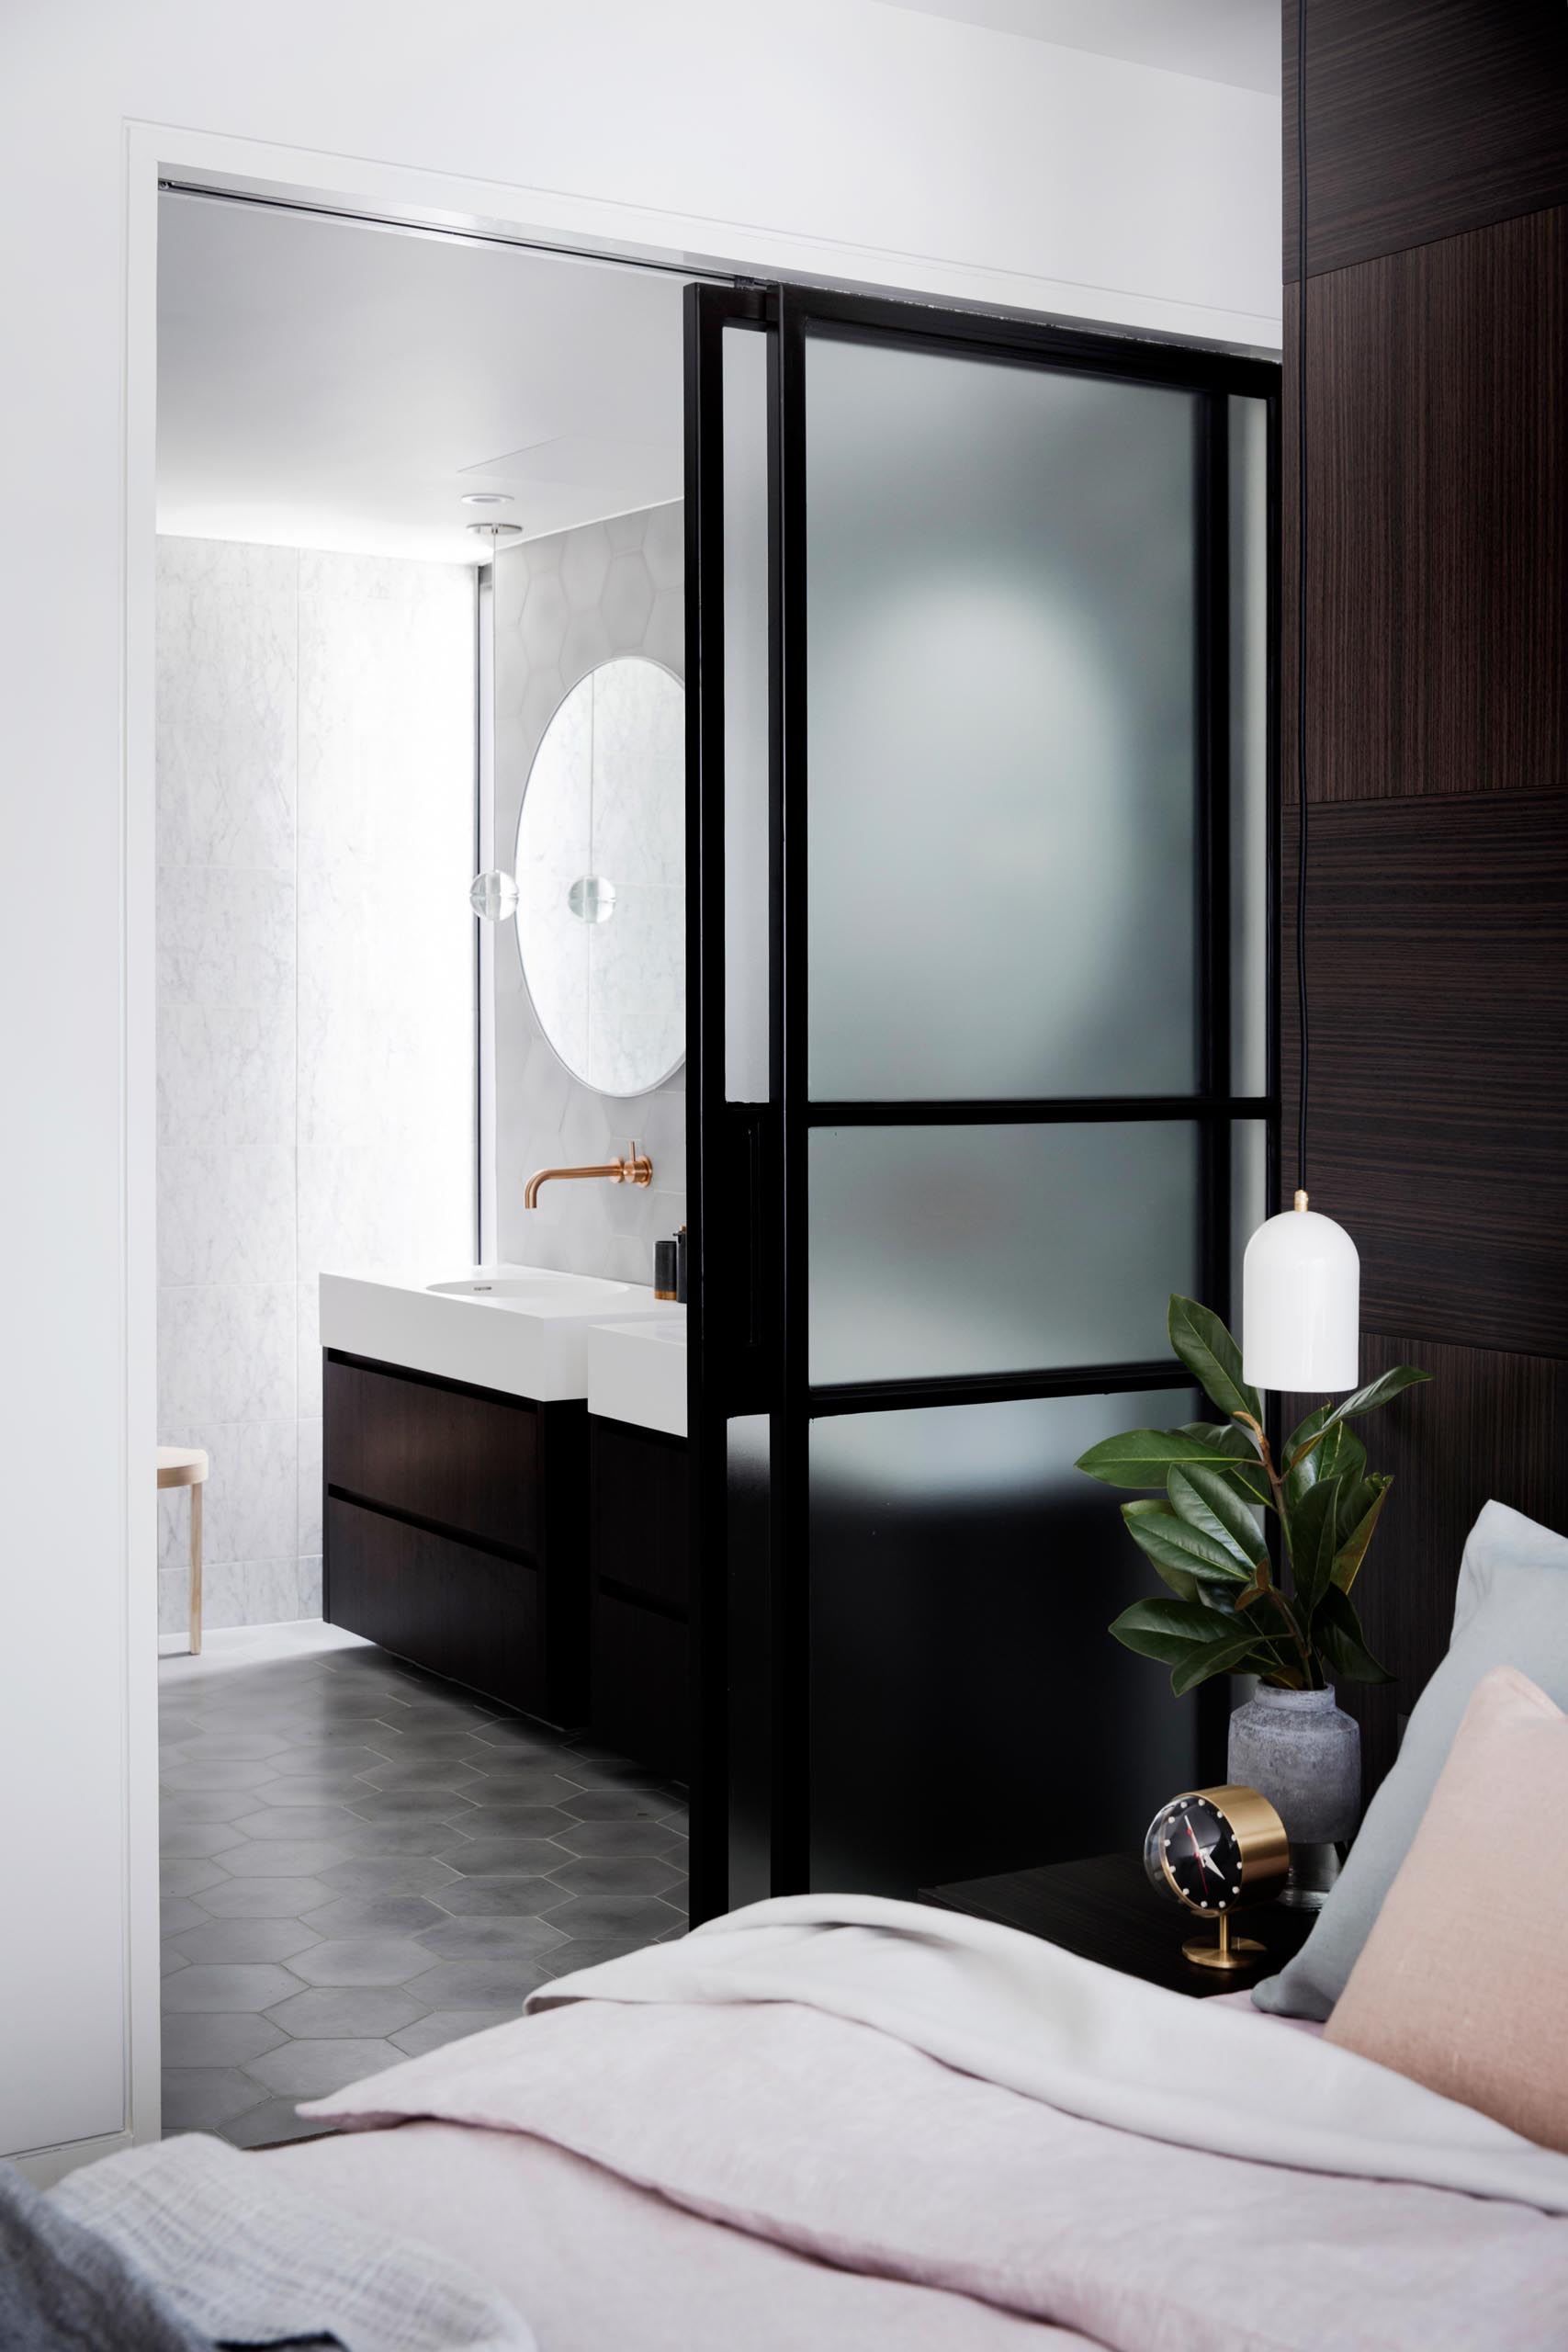 Дверь из матового стекла в черной рамке, которая открывается, открывая современную ванную комнату.